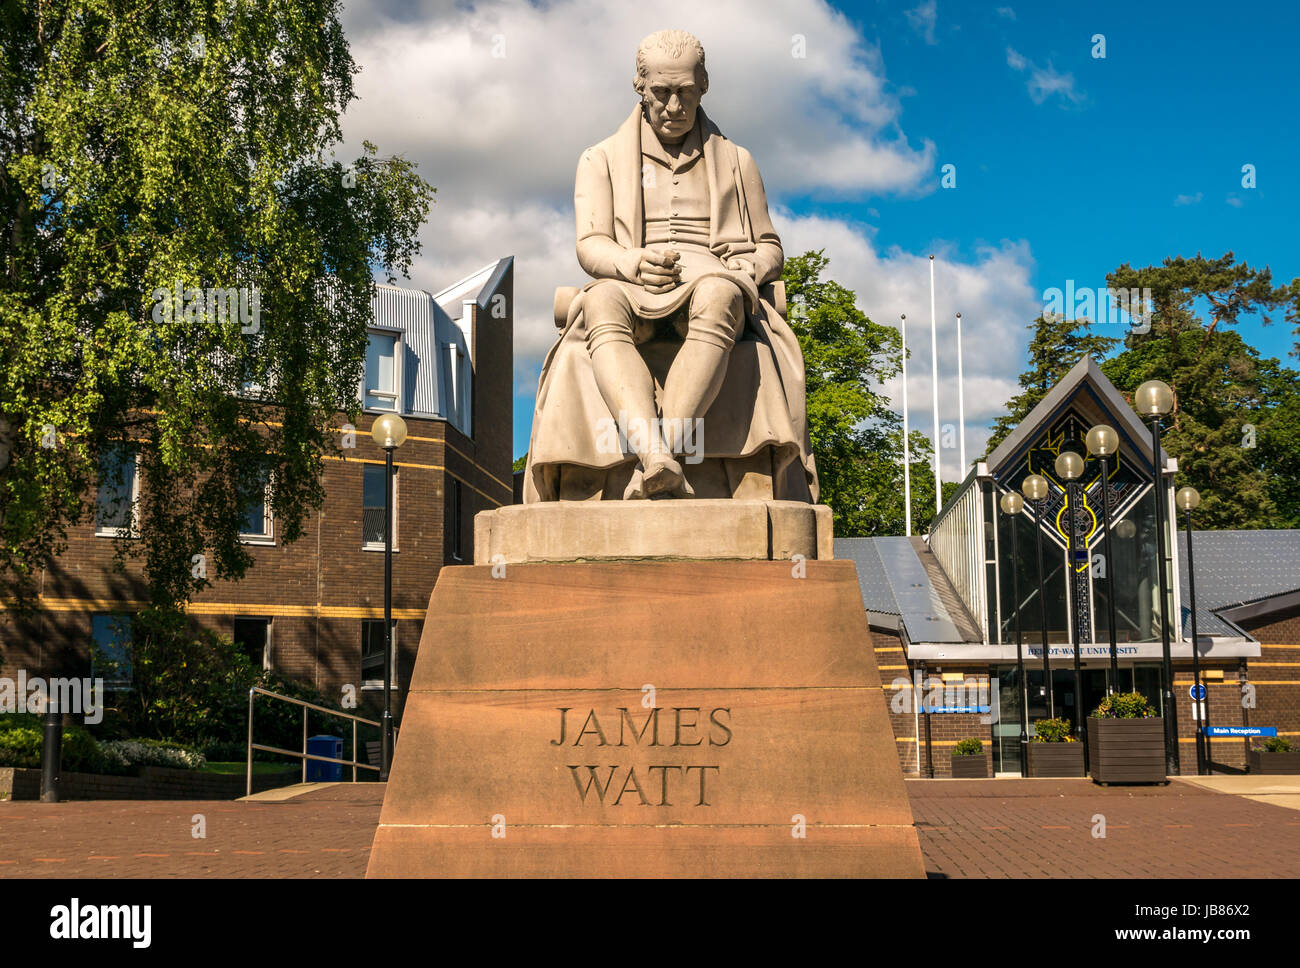 Statue de James Watt, l'inventeur et ingénieur, par Peter Slater, à l'entrée du campus de l'Université Heriot Watt Riccarton, Edinburgh, Ecosse, Royaume-Uni Banque D'Images